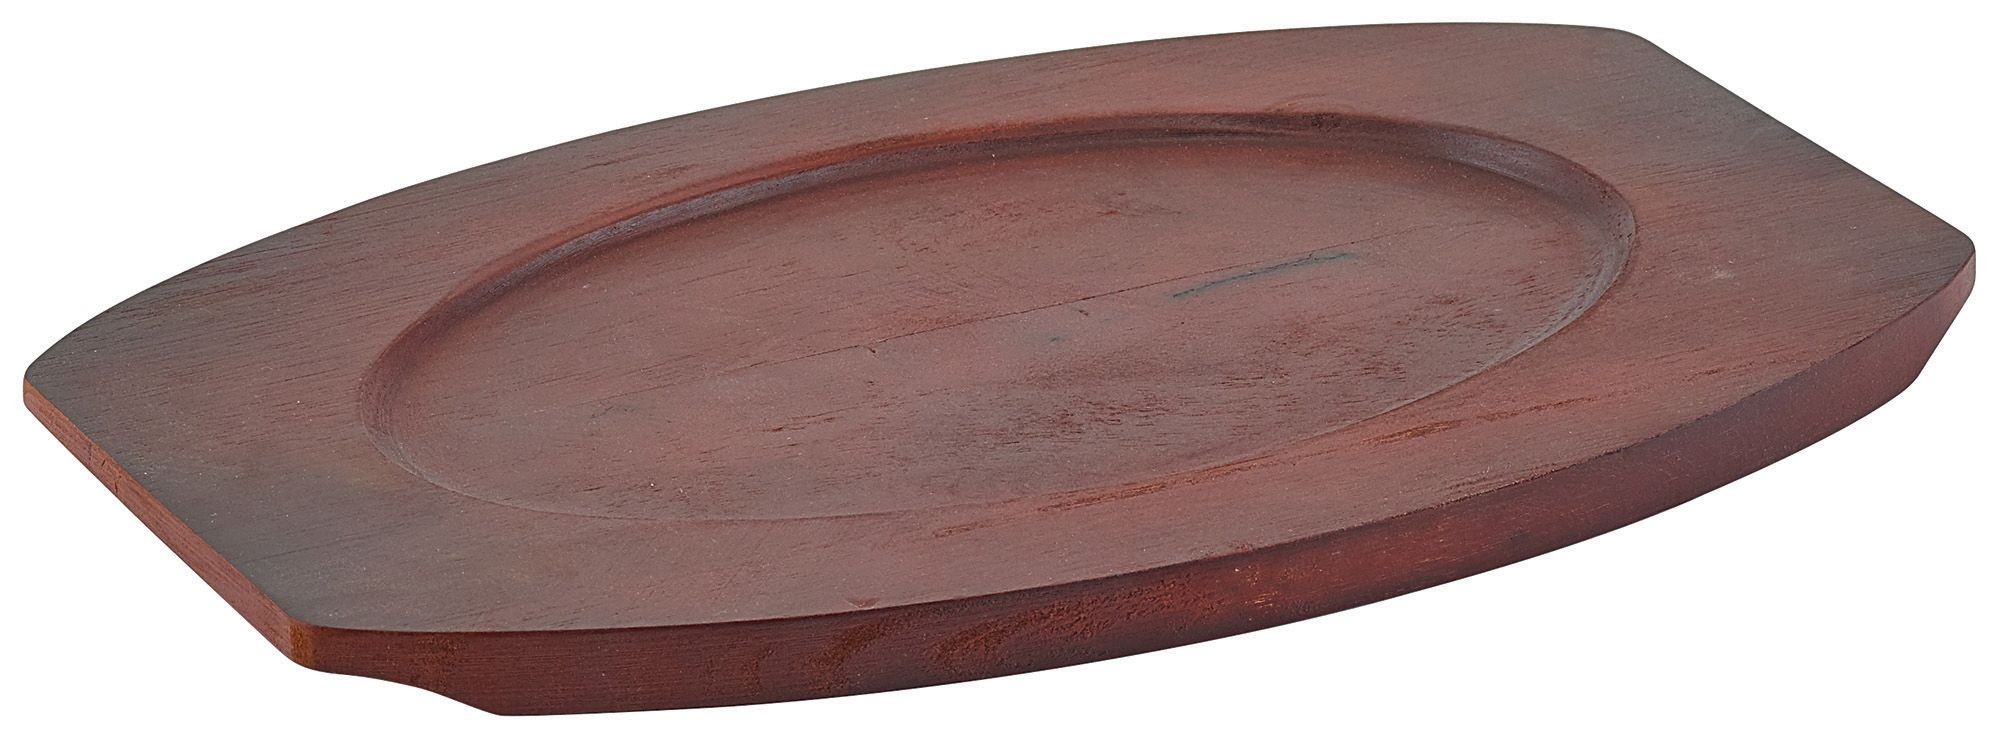 Winco APL-11UL Wood Underliner for 11" Oval Sizzling Platter